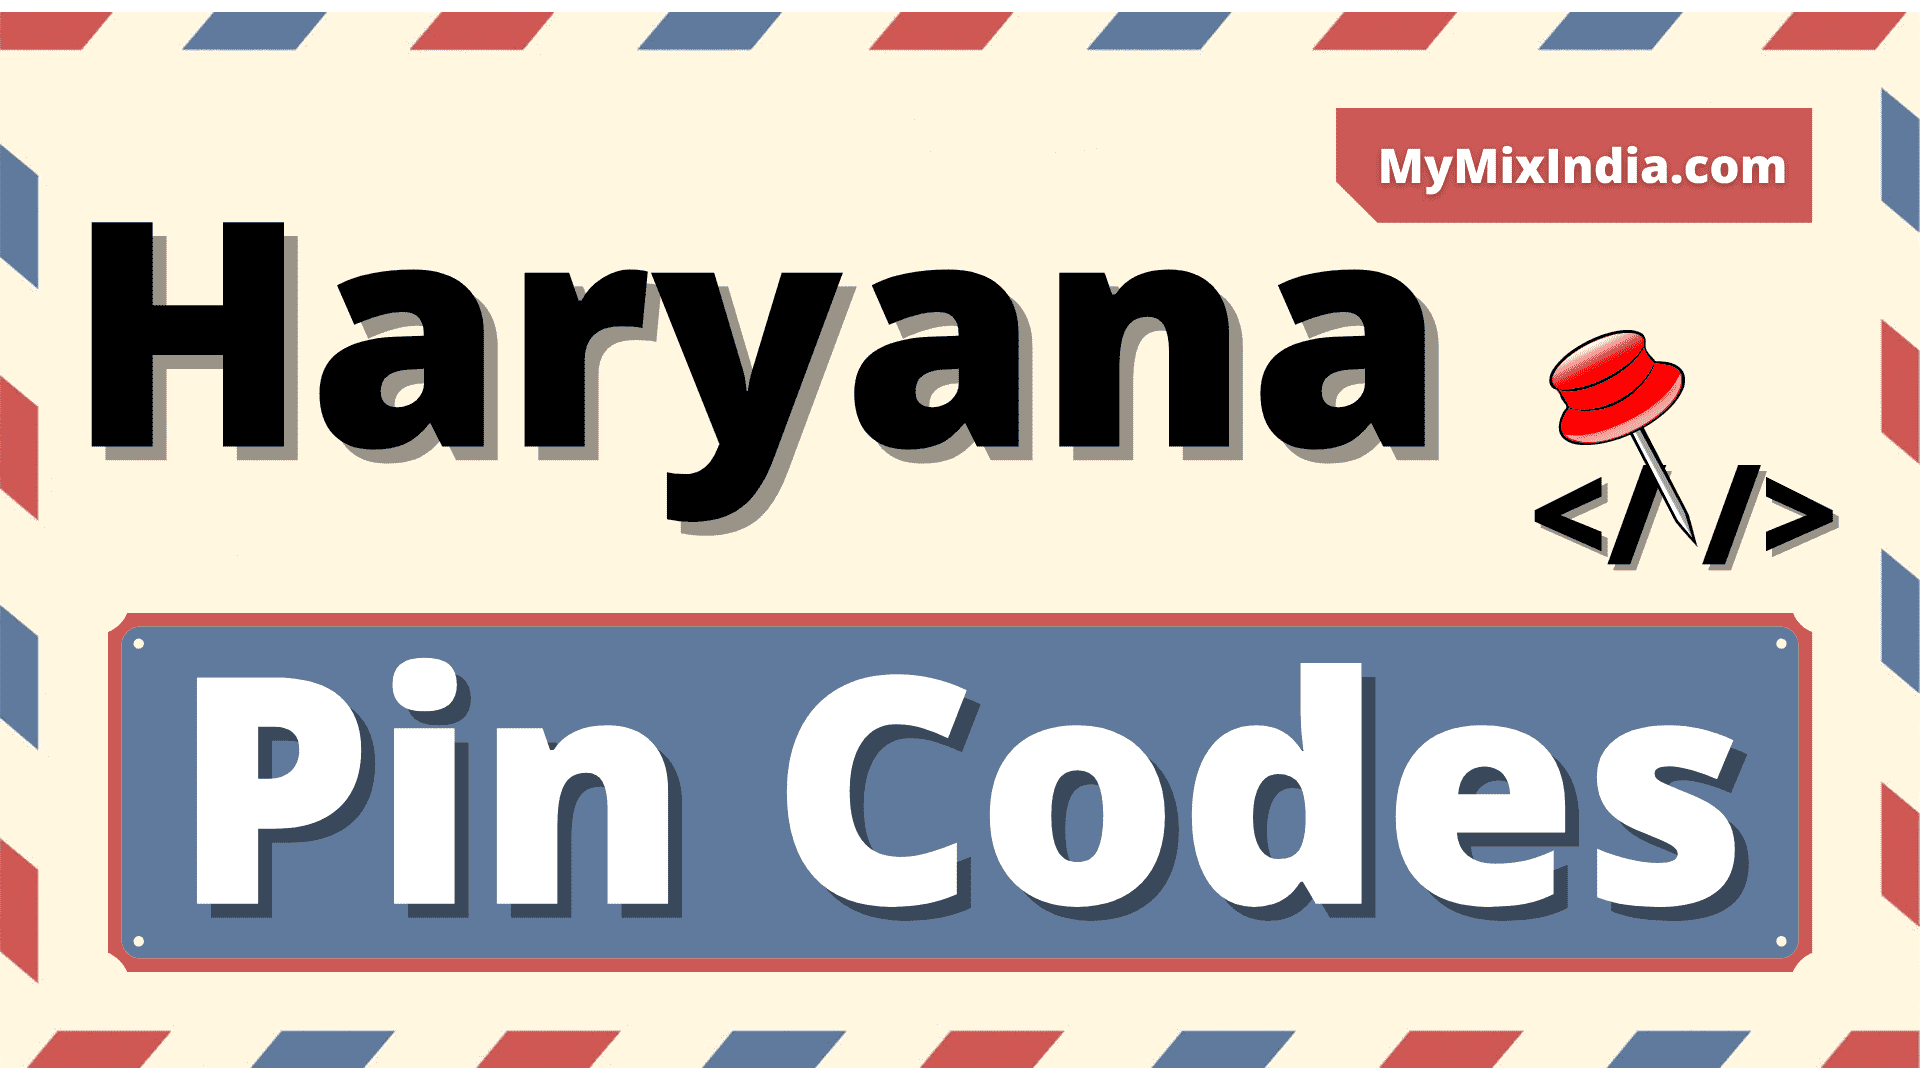 All Haryana Pin Codes - Mymixindia.com